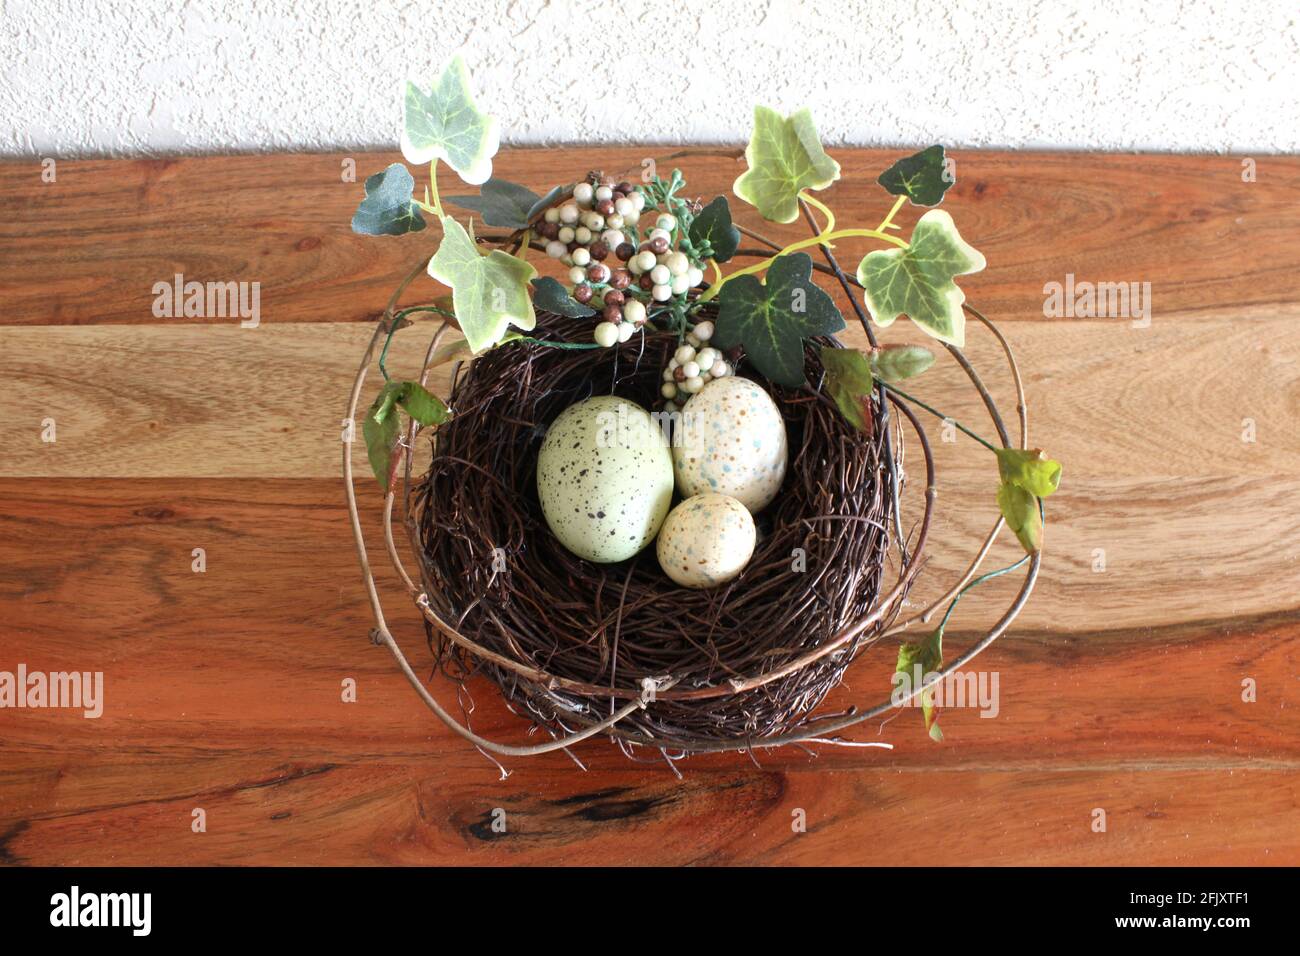 Illustration du ressort. 3 petits oeufs colorés dans un nid de pin pour Pâques, feuilles vertes et brindilles tout autour sur une table en bois Banque D'Images